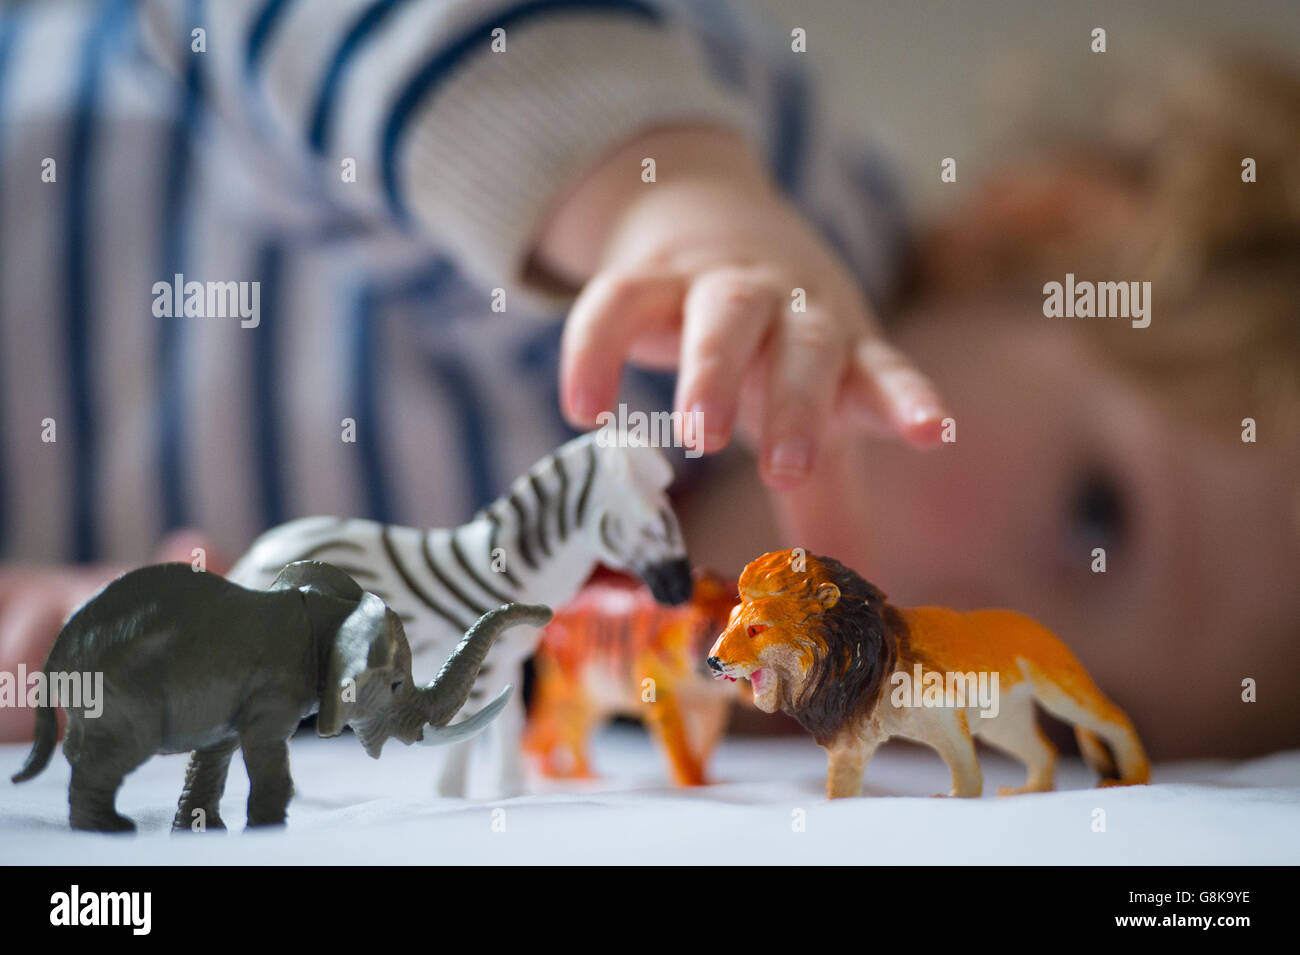 Un niño en edad preescolar juega con animales de juguete de plástico. Foto de stock